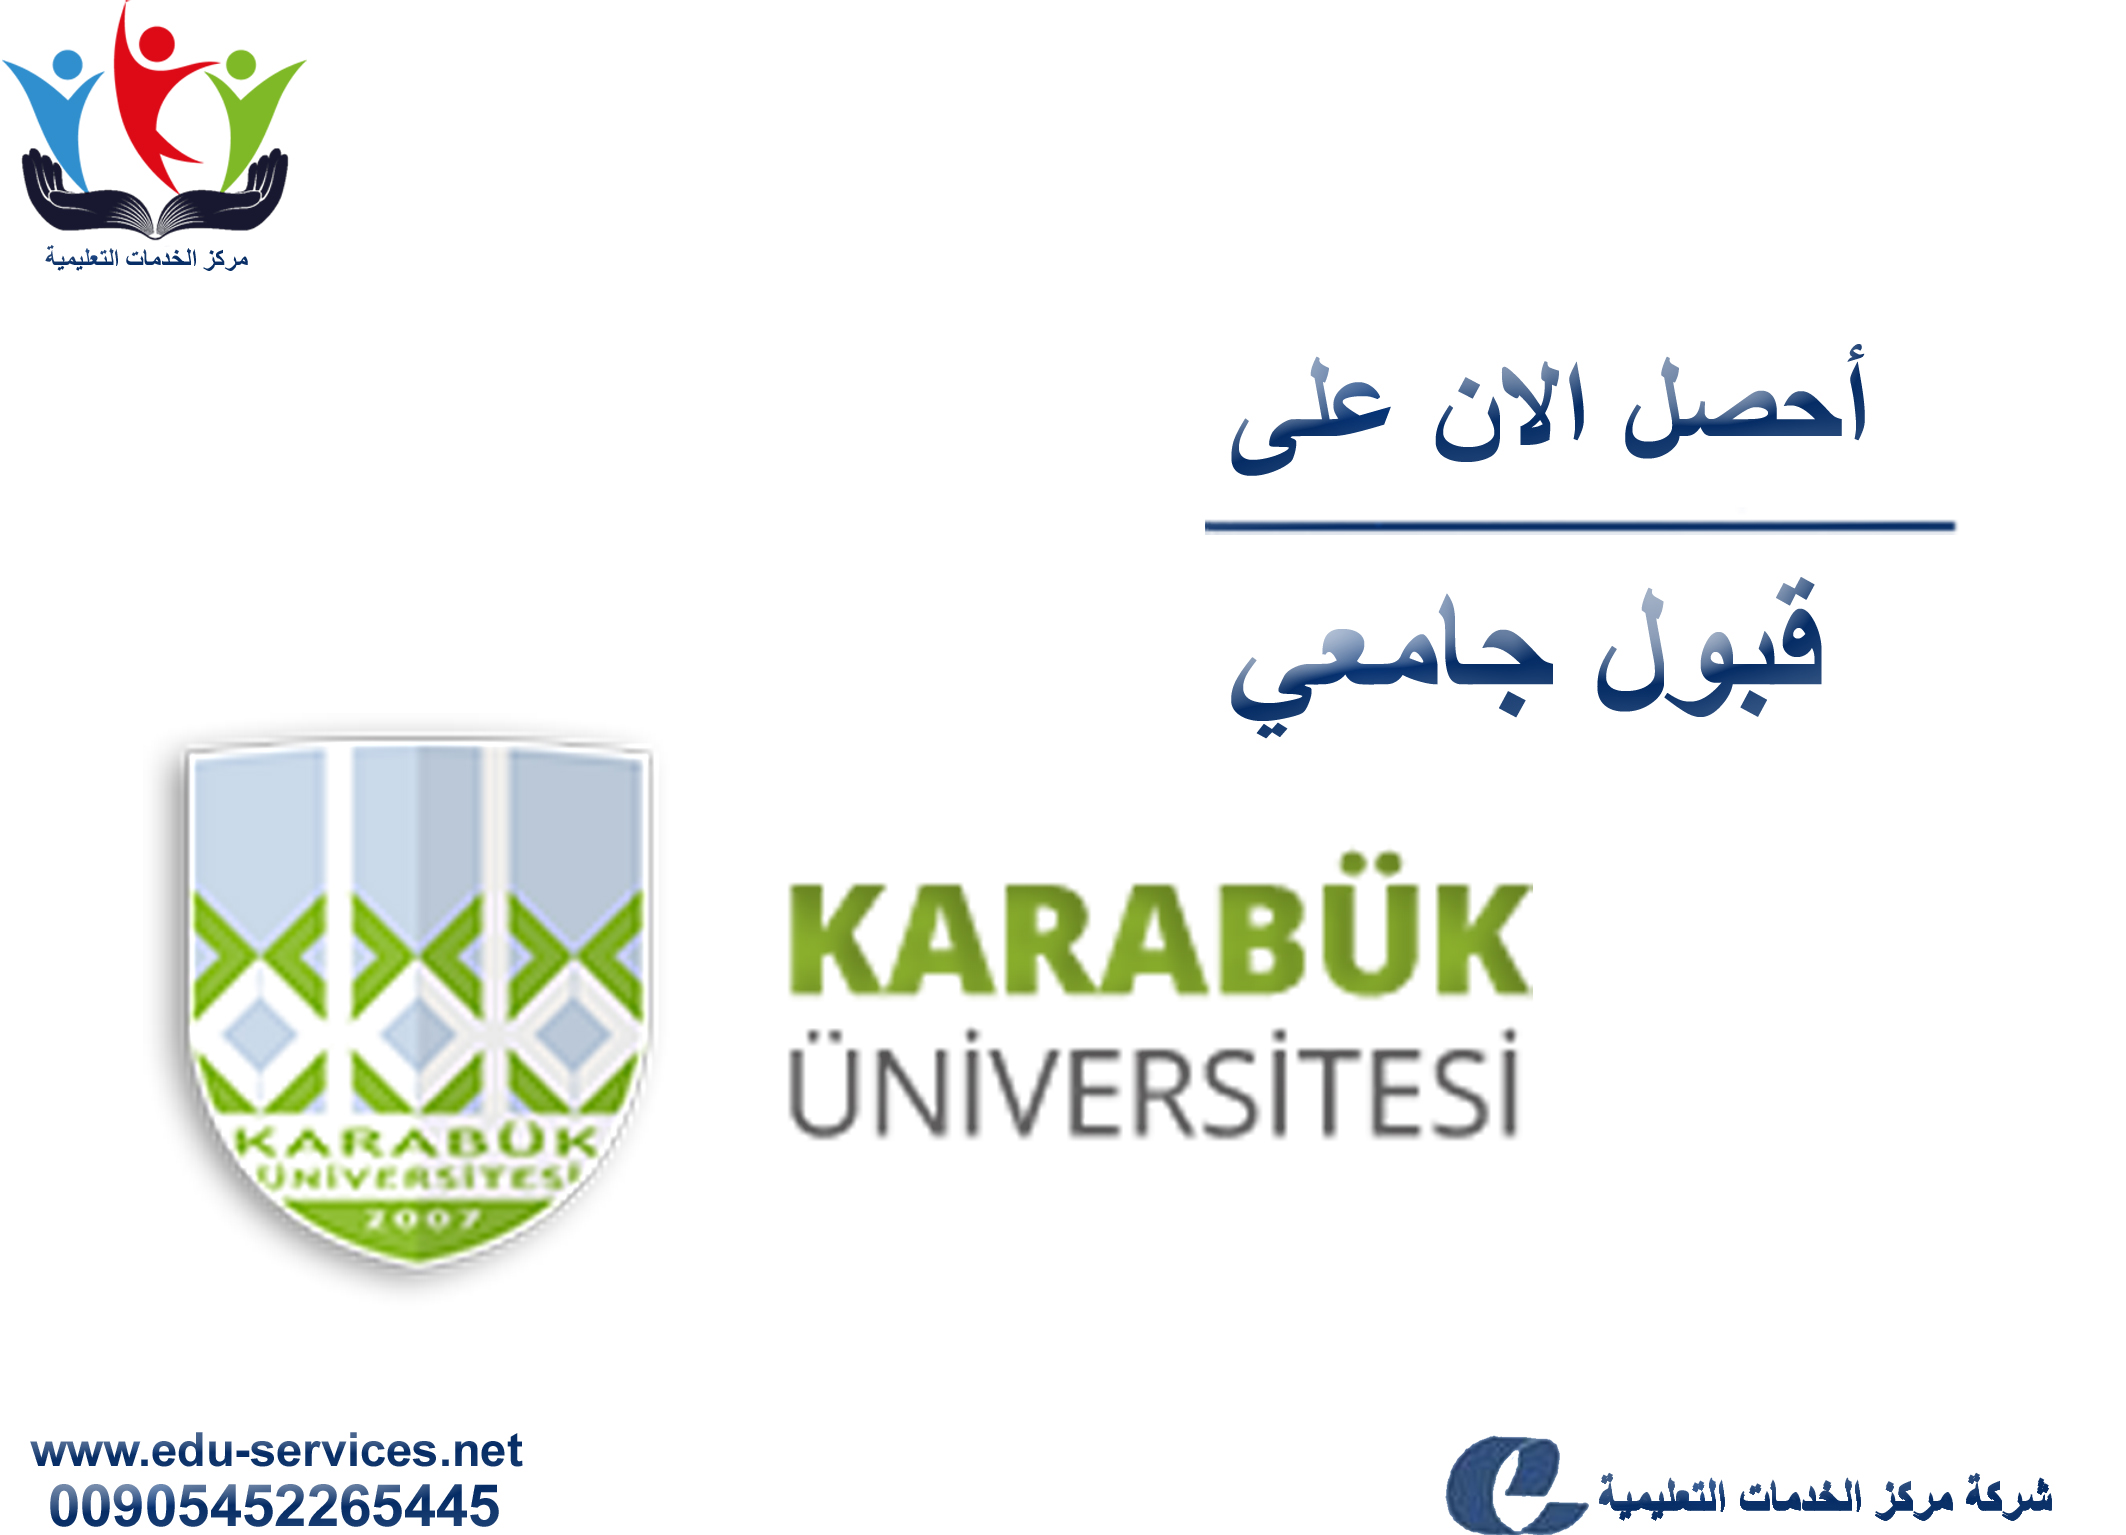 افتتاح التسجيل على جامعة كارابوك للدراسات العليا للفصل الدراسي الثاني 2019/2018